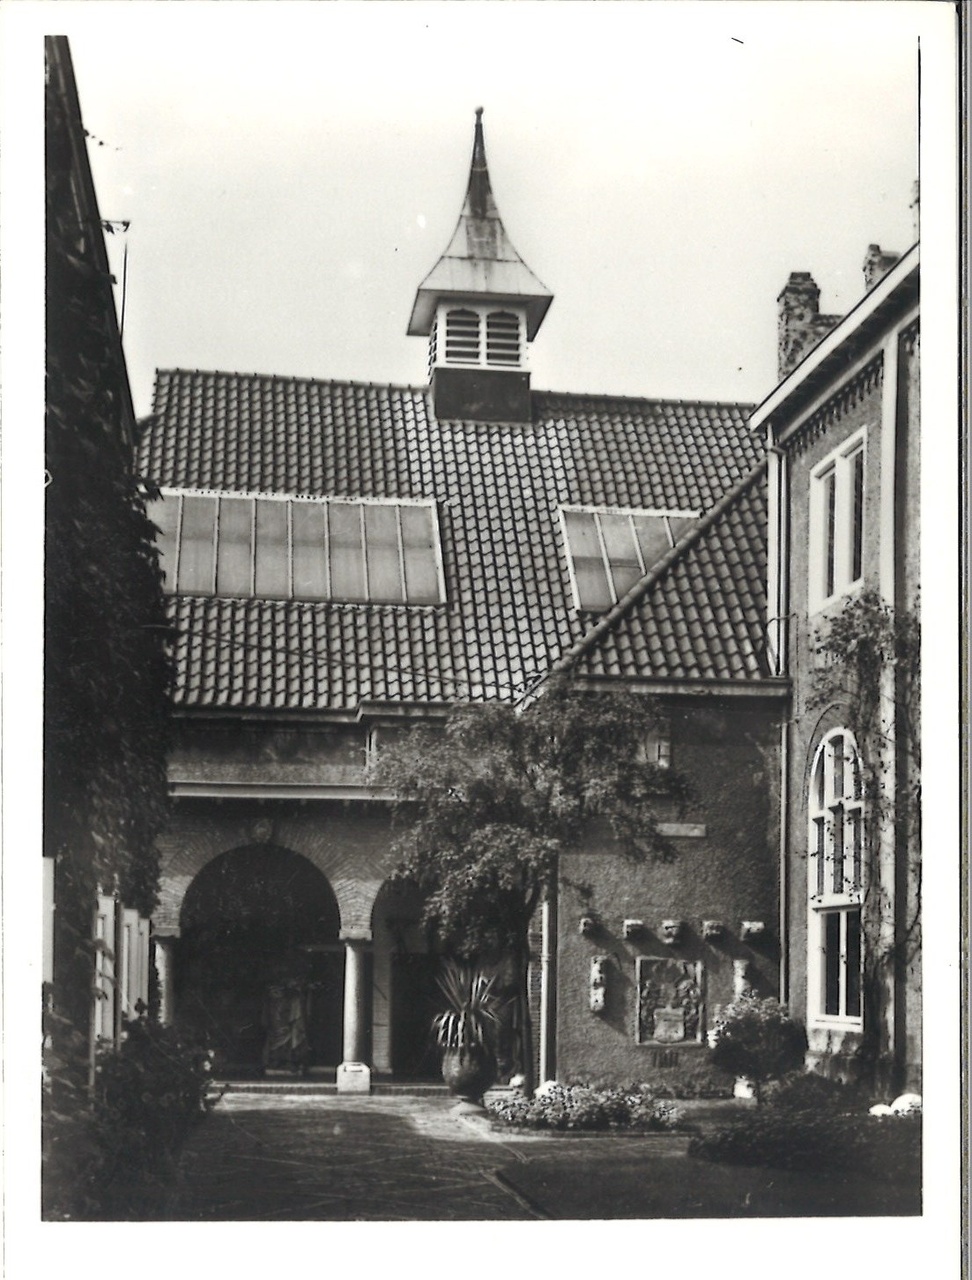 Map met foto's en ansichtkaarten gerelateerd aan het Cuypershuis te Roermond: foto 6693h